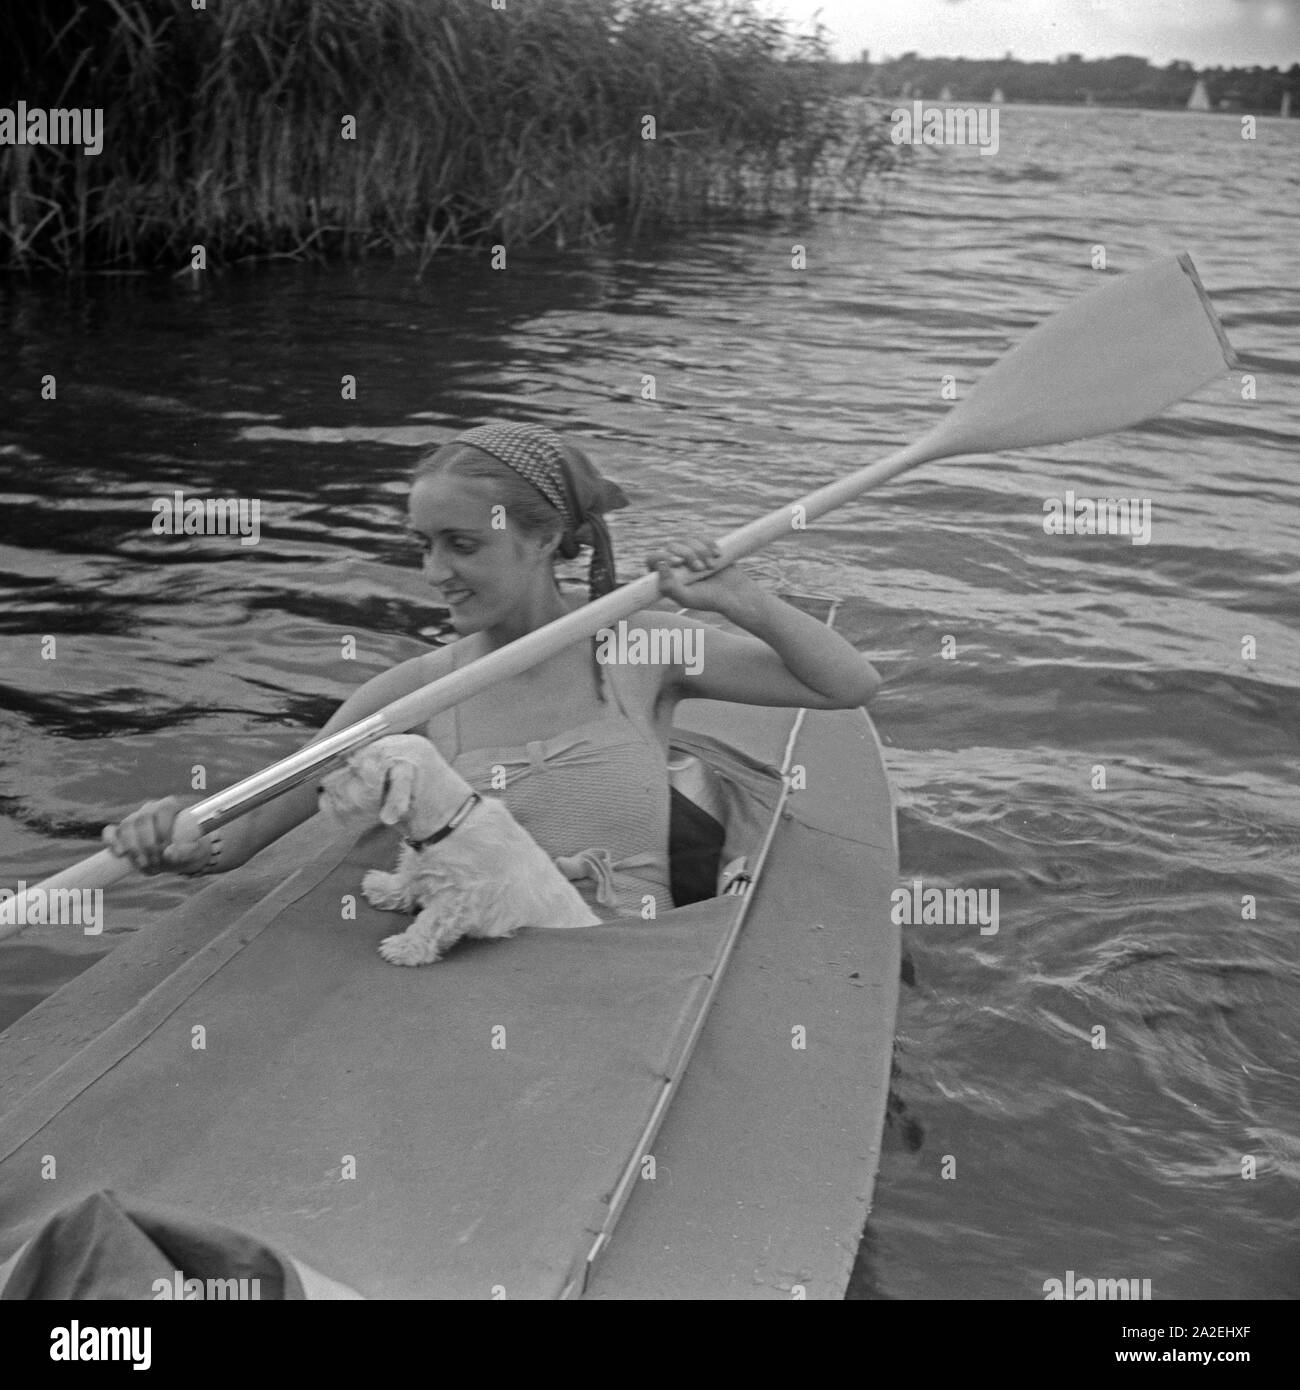 Werbefoto für das Klepper Faltboot: eine junge Frau paddelt Mit einem Welpen auf einem vedere, Deutschland 1930er Jahre. Pubblicità für un Klepper foldboat: una giovane donna con un cucciolo pagaiando su un lago, Germania 1930s. Foto Stock